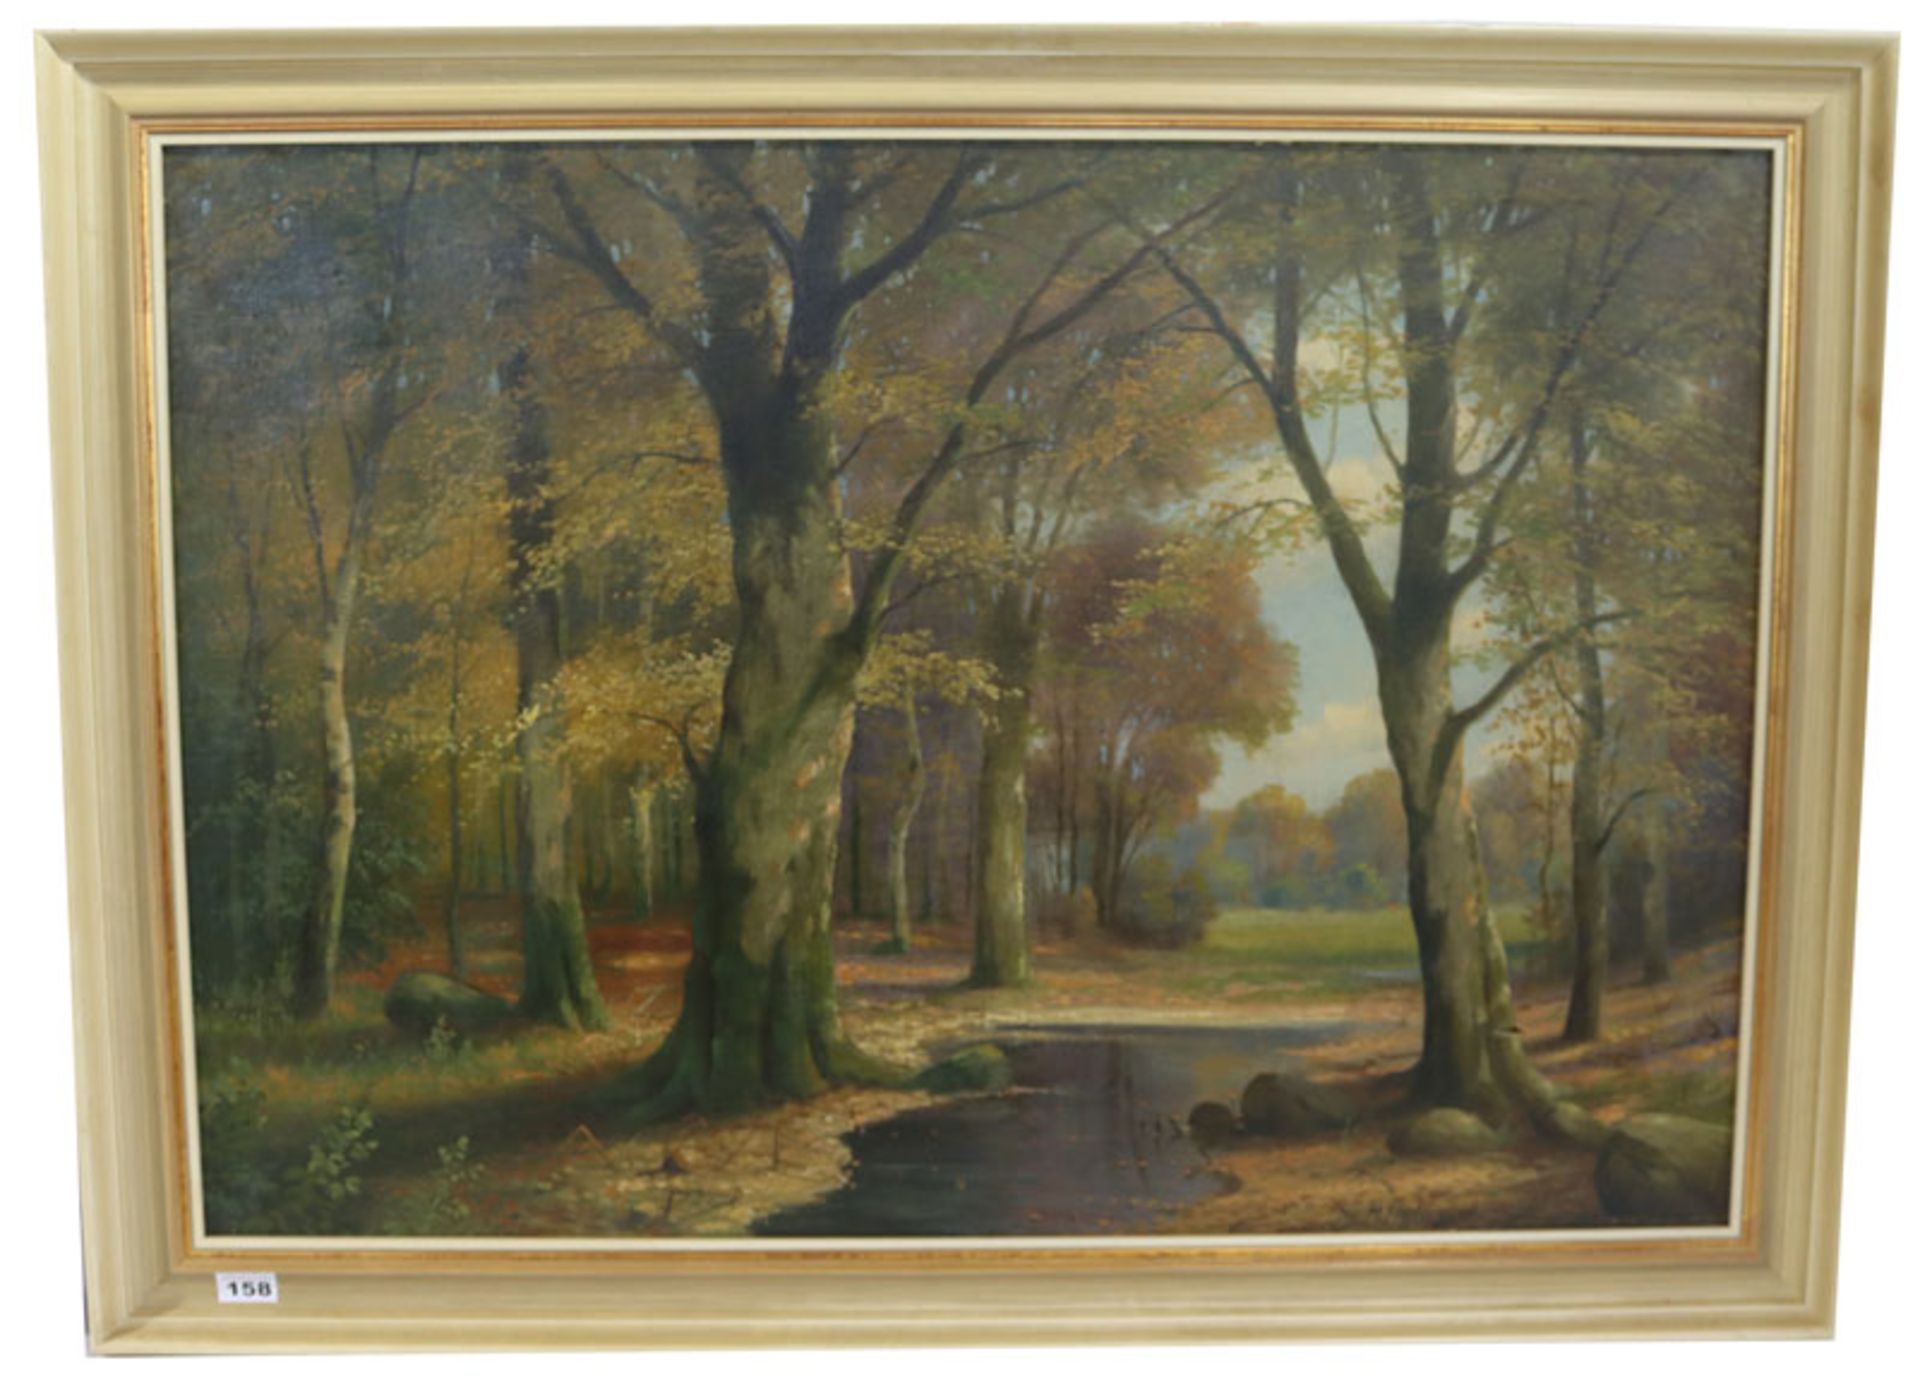 Gemälde ÖL/LW 'Herbstliche Waldlandschaft', signiert M. Höpflinger, 20. Jahrhundert, LW teils